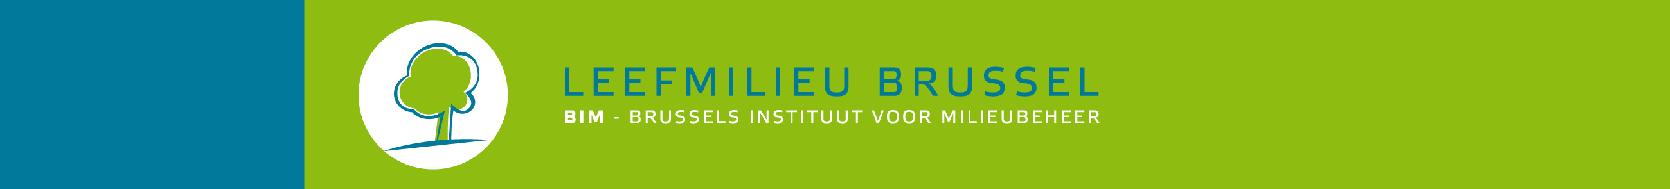 Opleiding Duurzaam Gebouw: Hergebruik van materialen en bouwelementen Leefmilieu Brussel Vademecum voor hergebruik